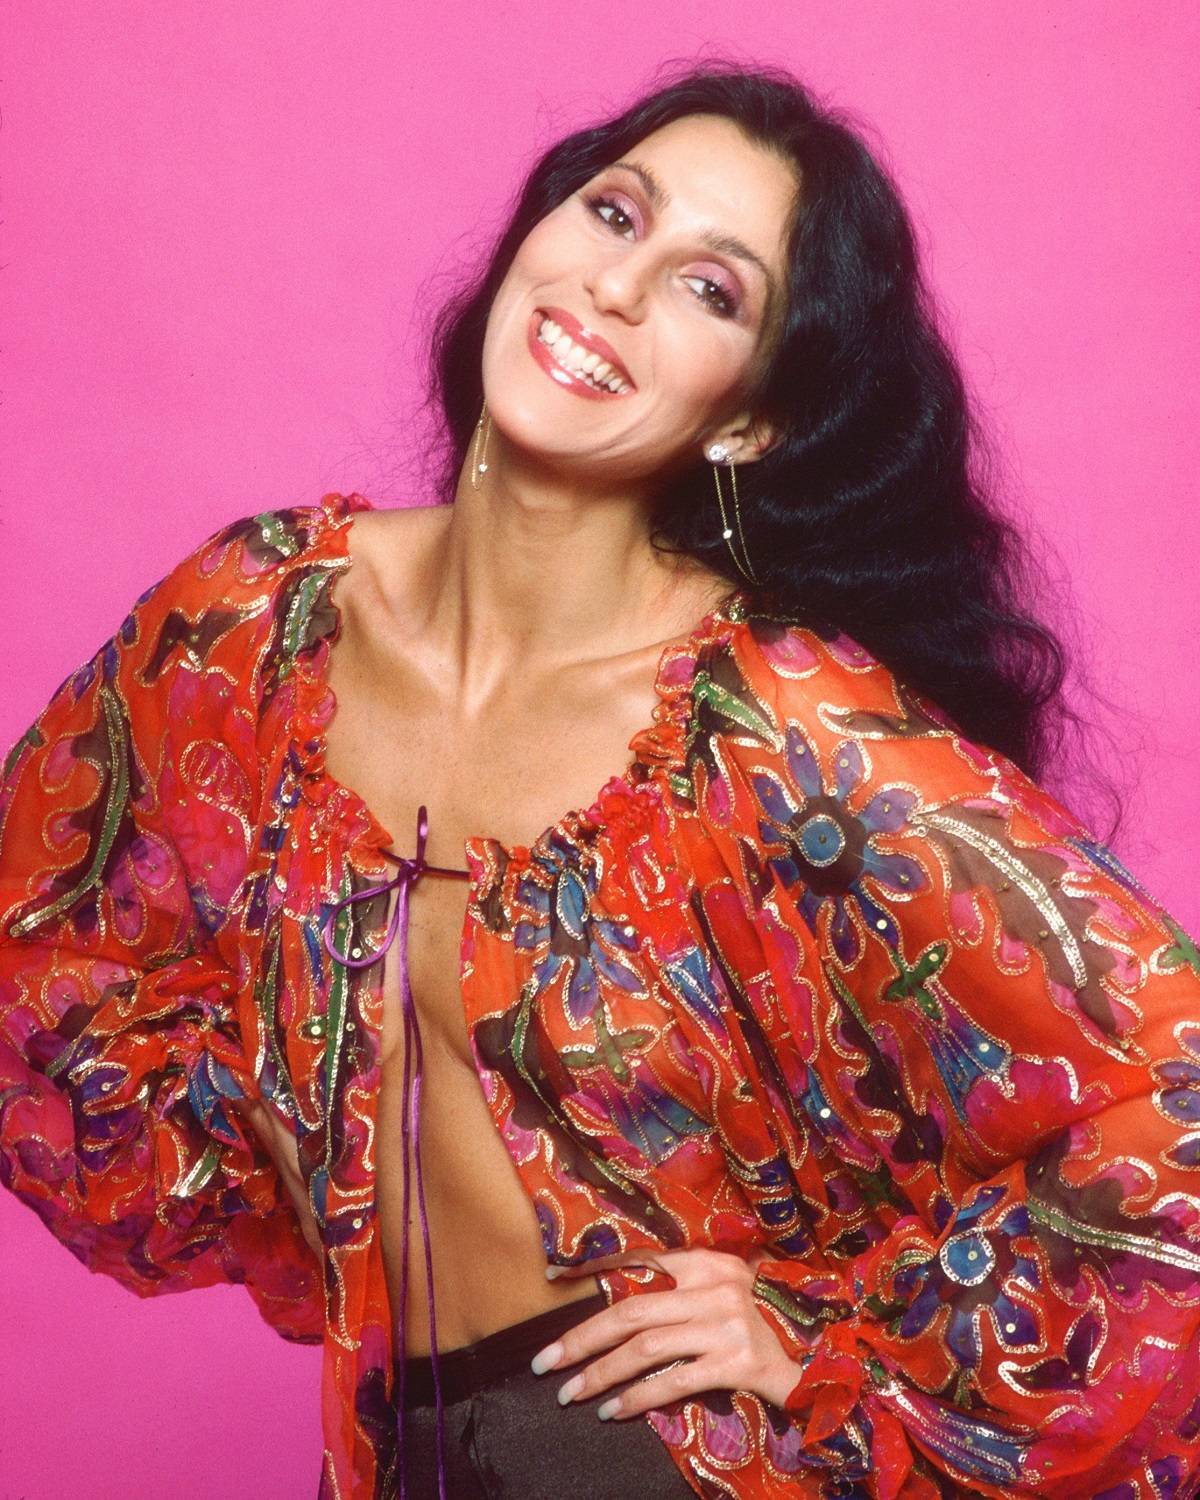 Cher w bluzce projektu Mackiego, 1977 rok